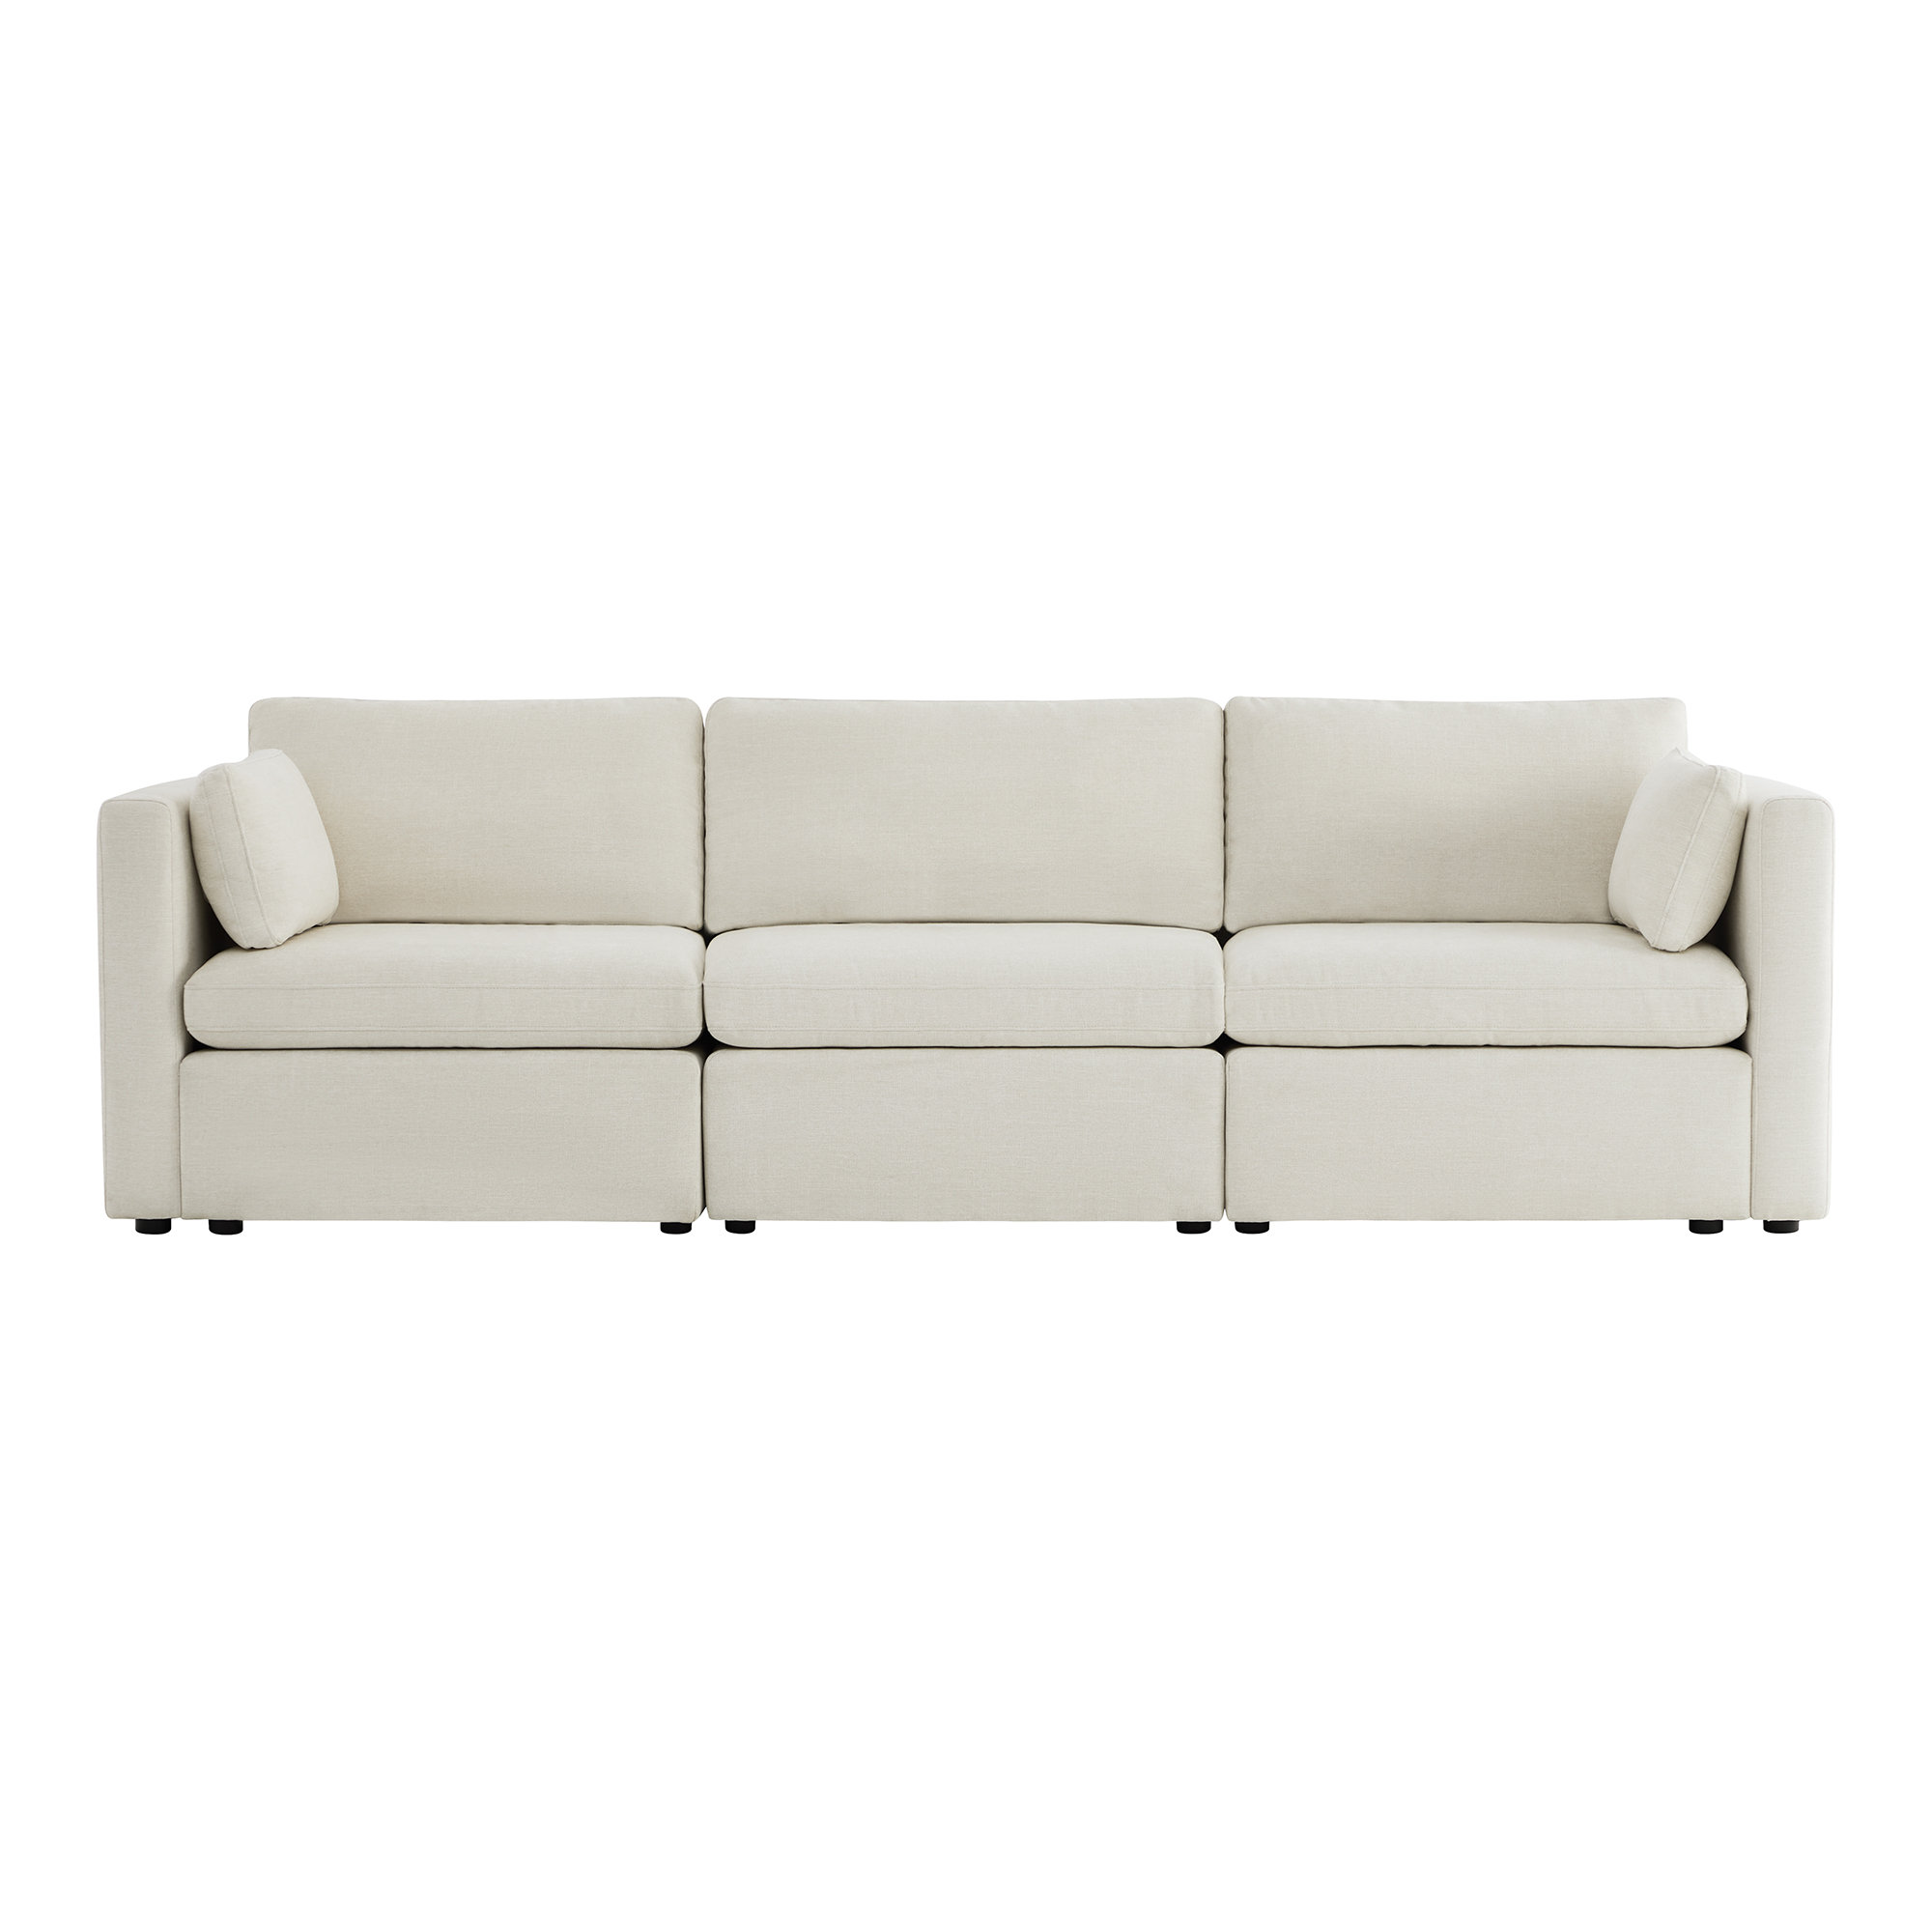 https://assets.wfcdn.com/im/49539672/compr-r85/2437/243727212/datura-3-piece-1126-upholstered-sofa.jpg